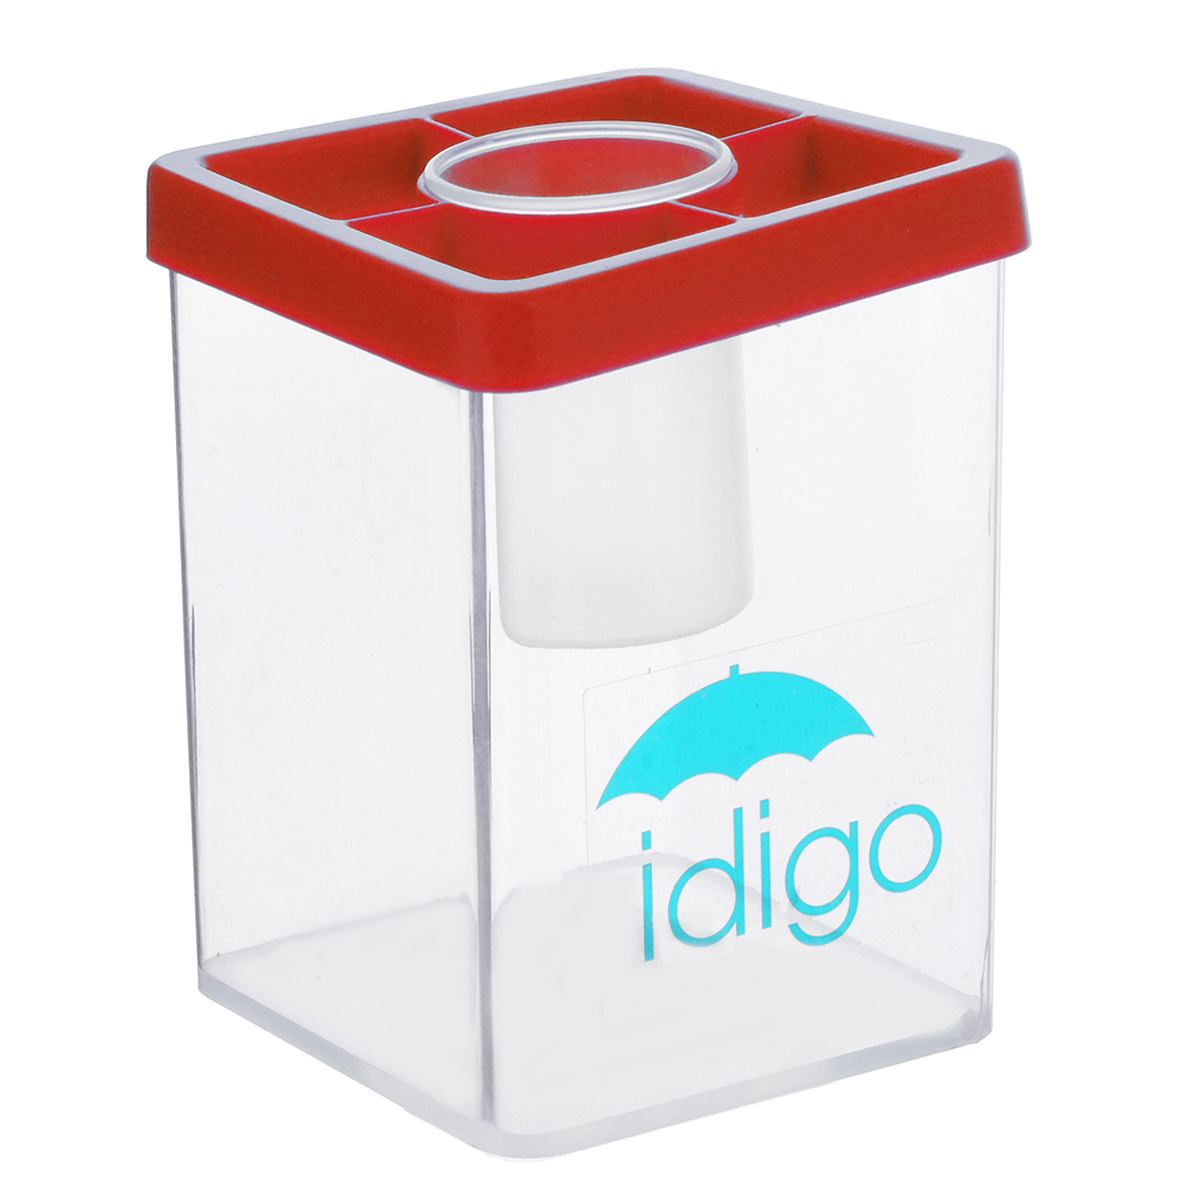 Многофункциональная подставка-стакан "Idigo", цвет: красный